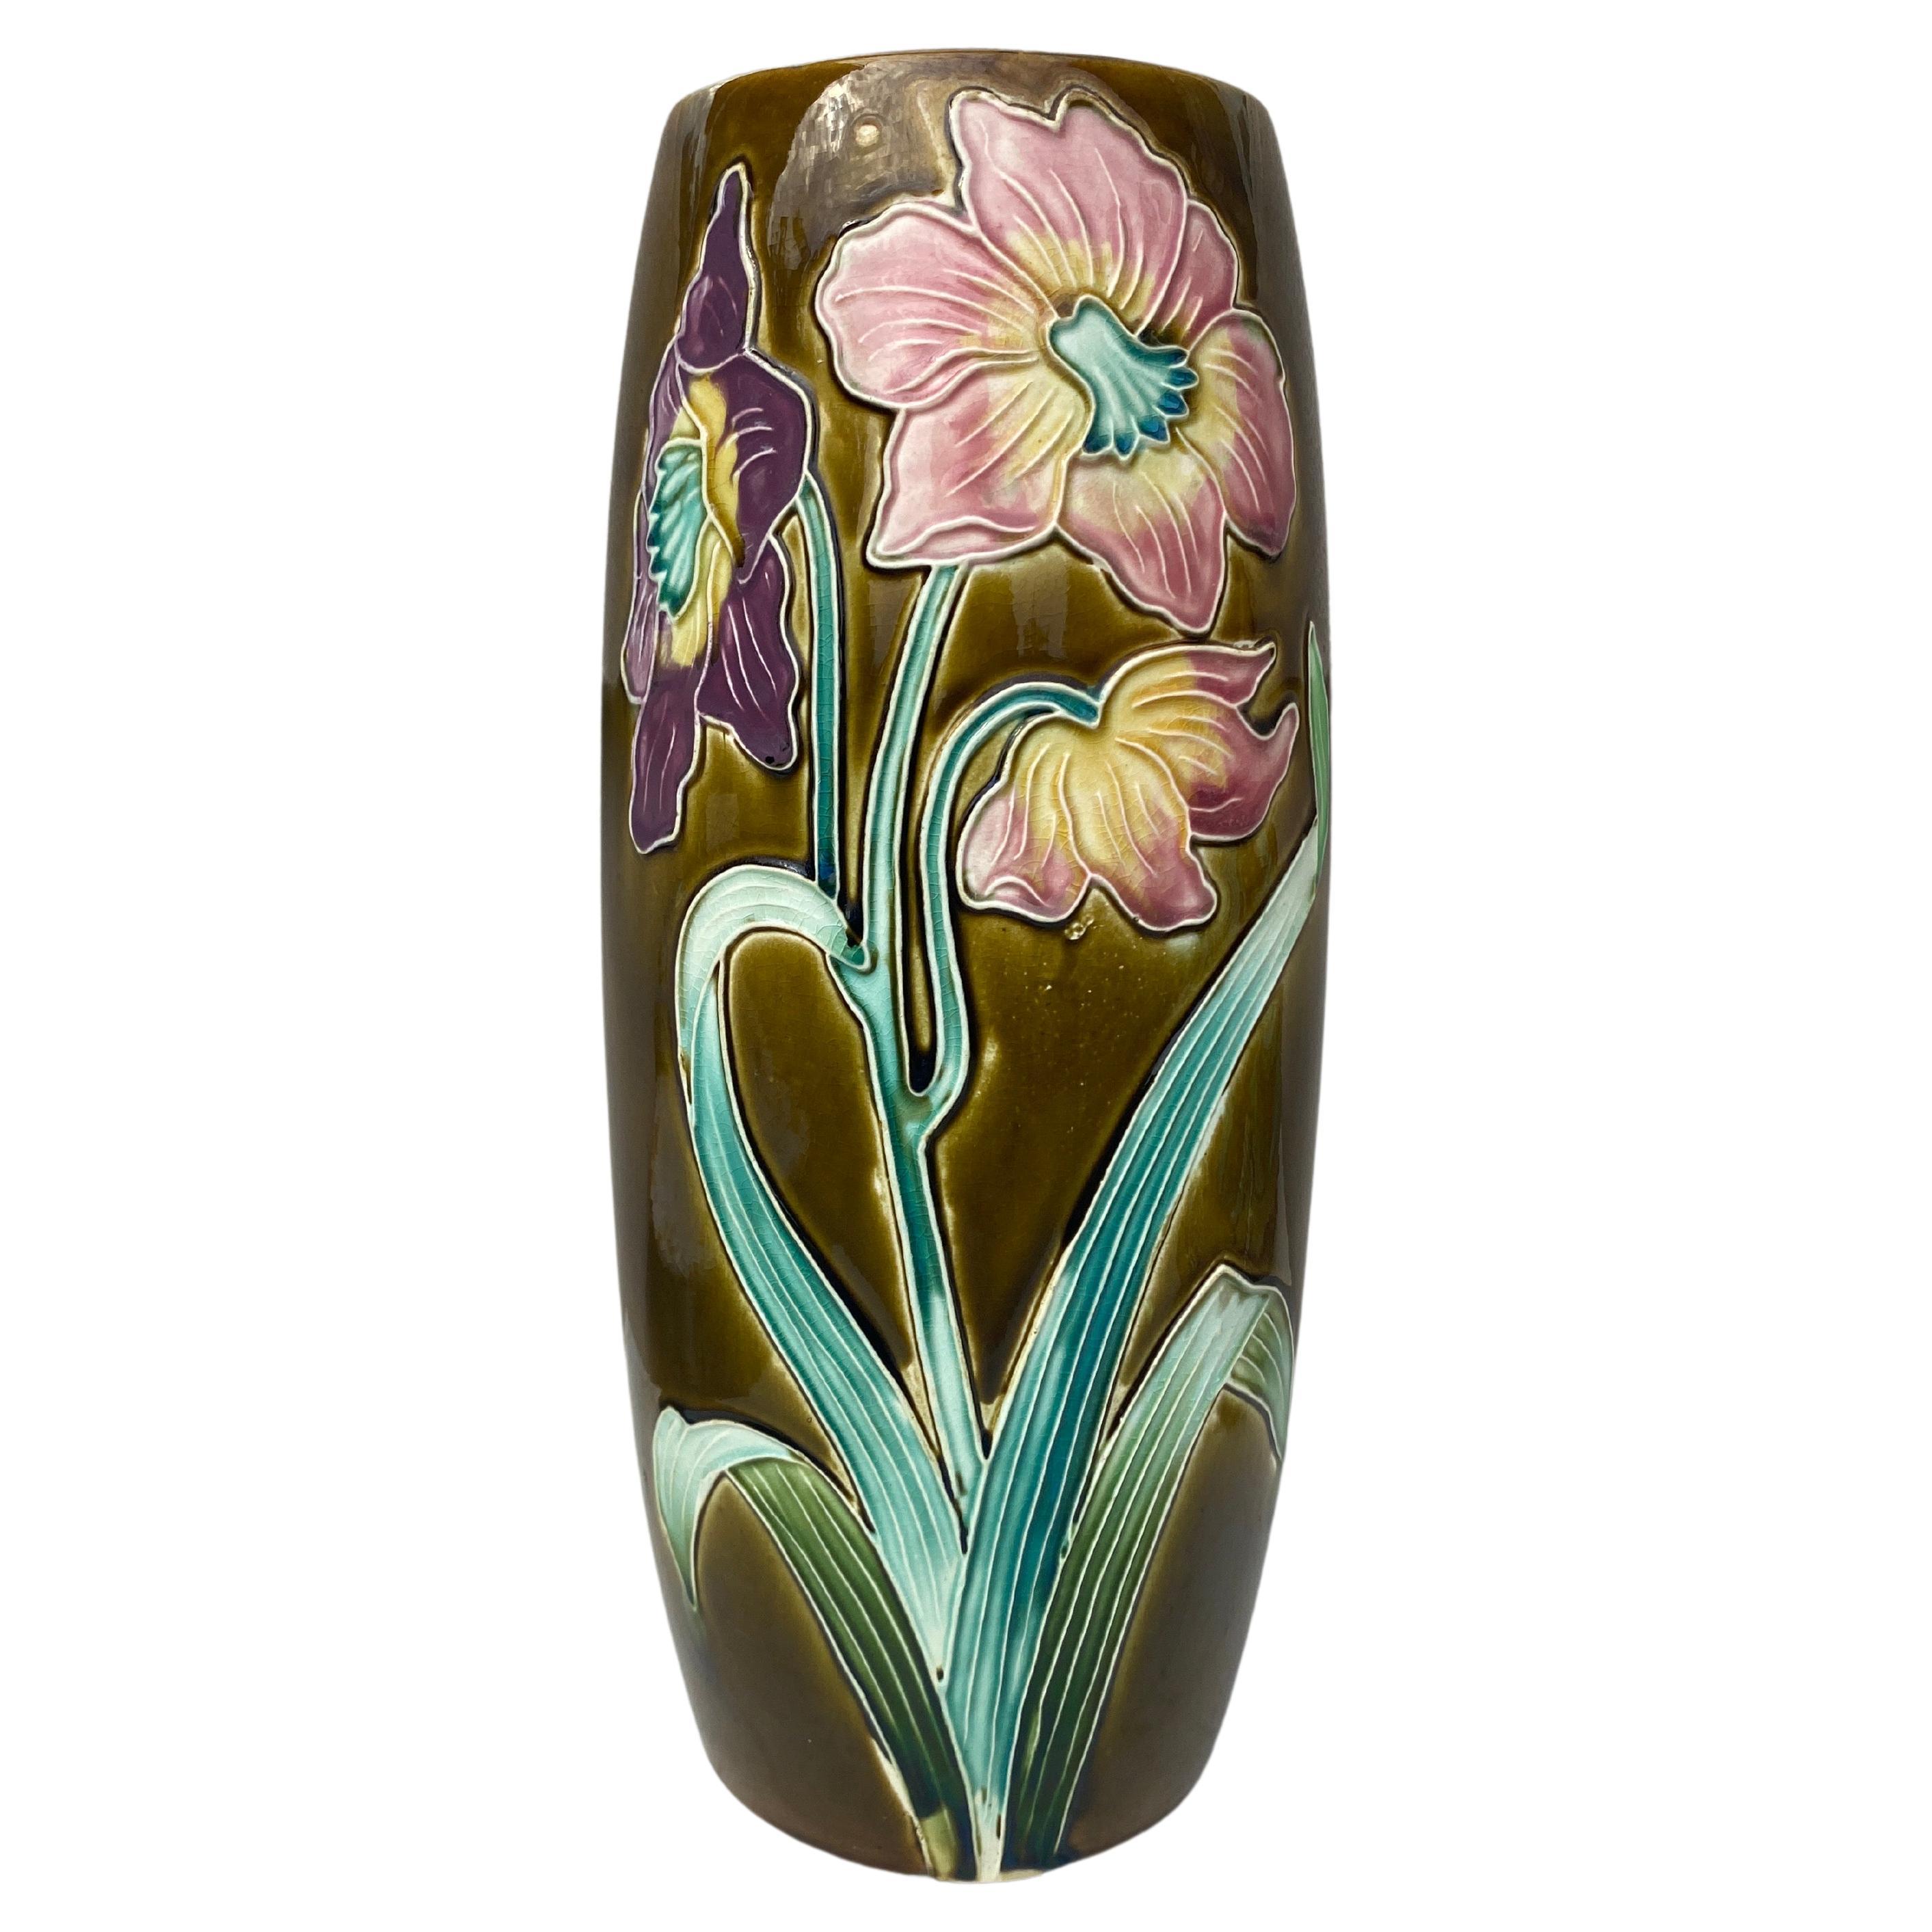 Grand vase à fleurs en majolique française signé Fives-Lille, vers 1880.
